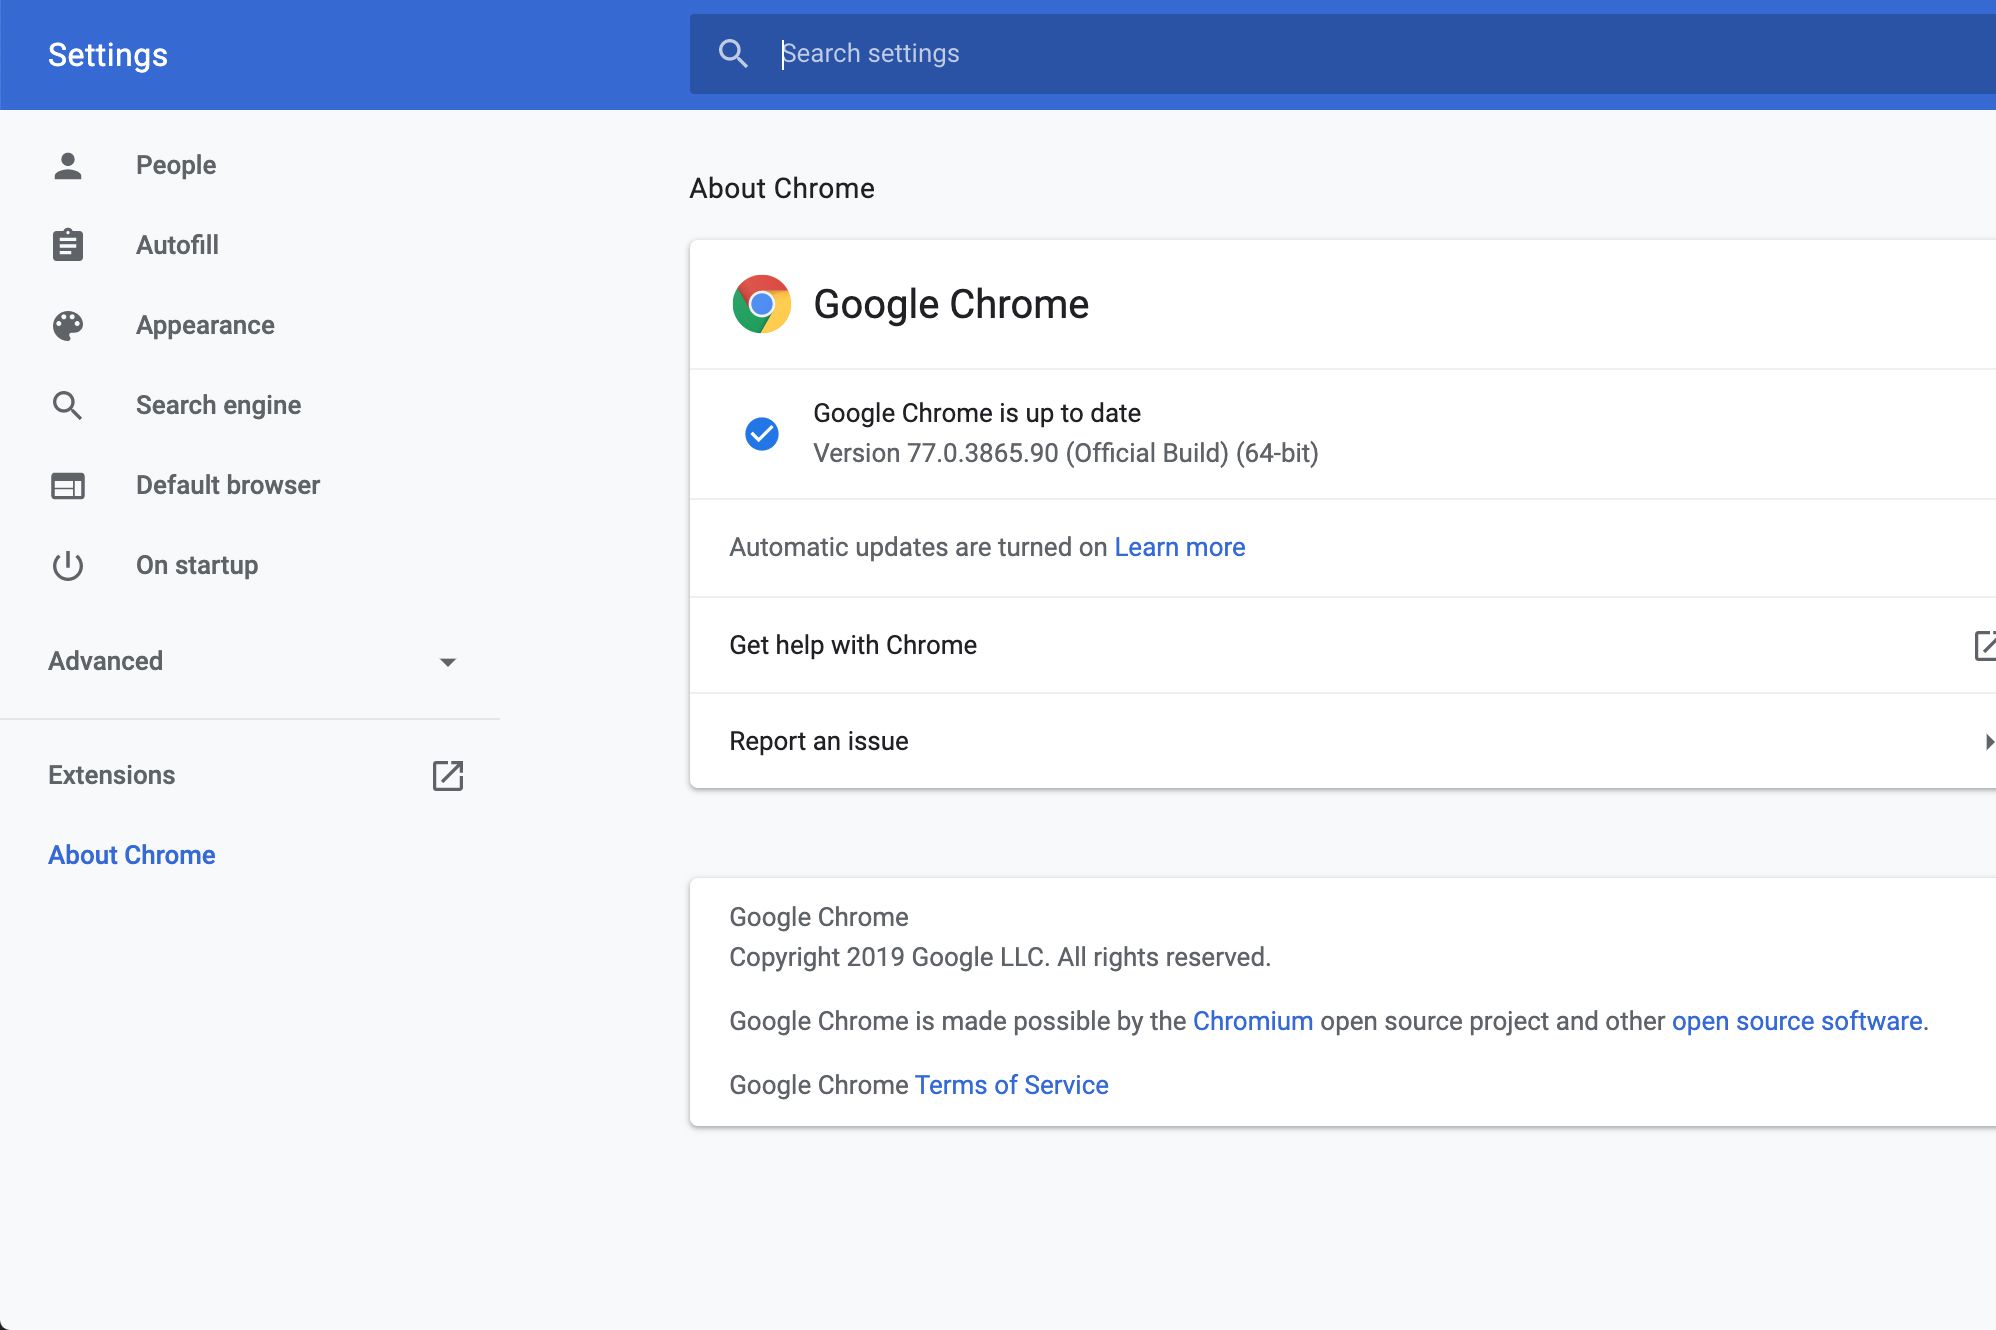 Informatie over Chrome-versie